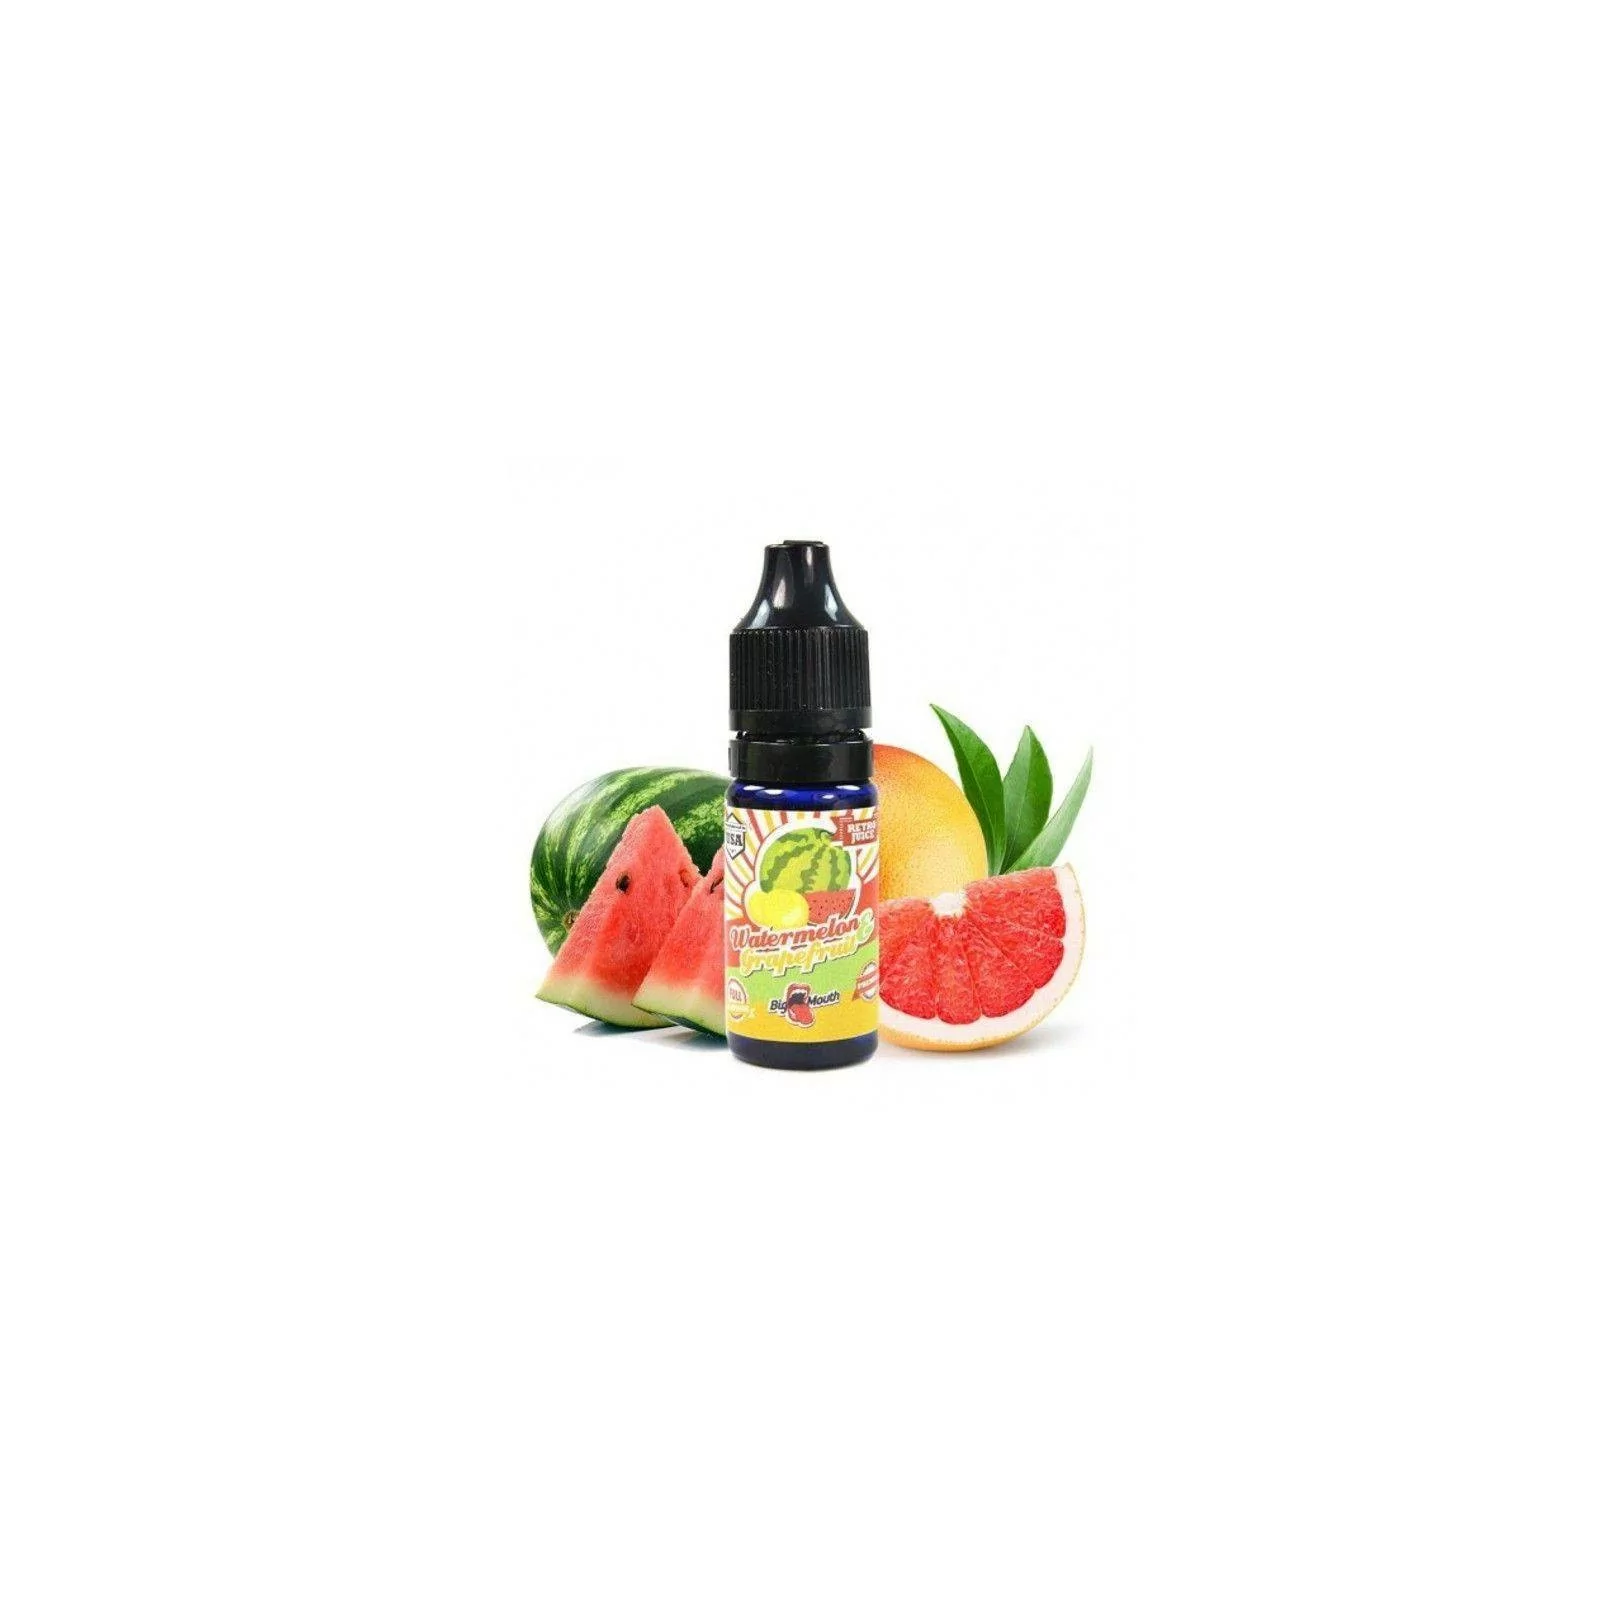 Concentré Watermelon & Grapefruit - Big Mouth Liquids